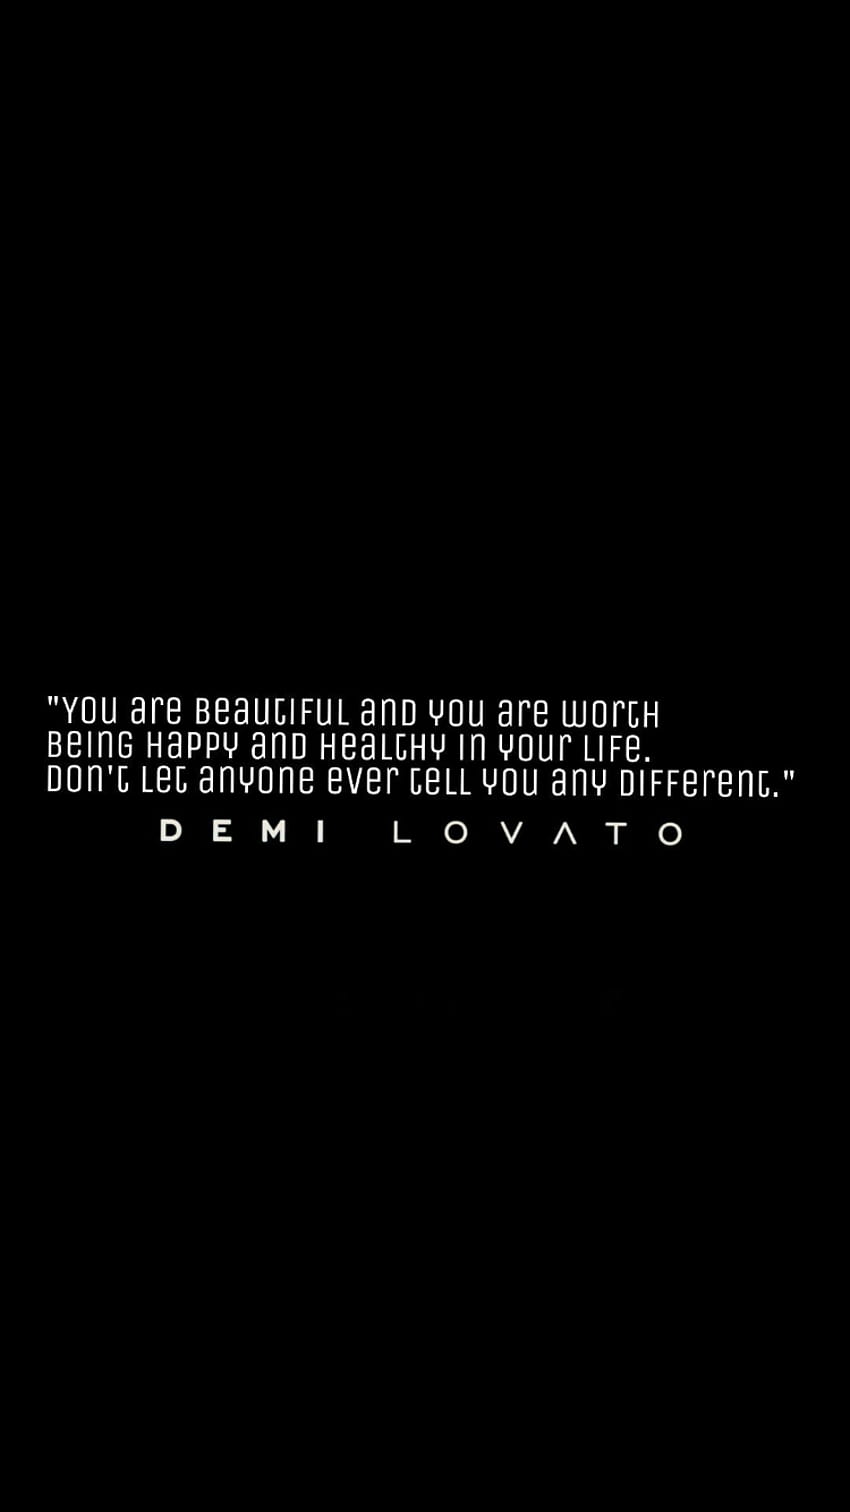 Candela on Demi. Demi lovato lyrics, Demi lovato quotes, Demi lovato HD phone wallpaper